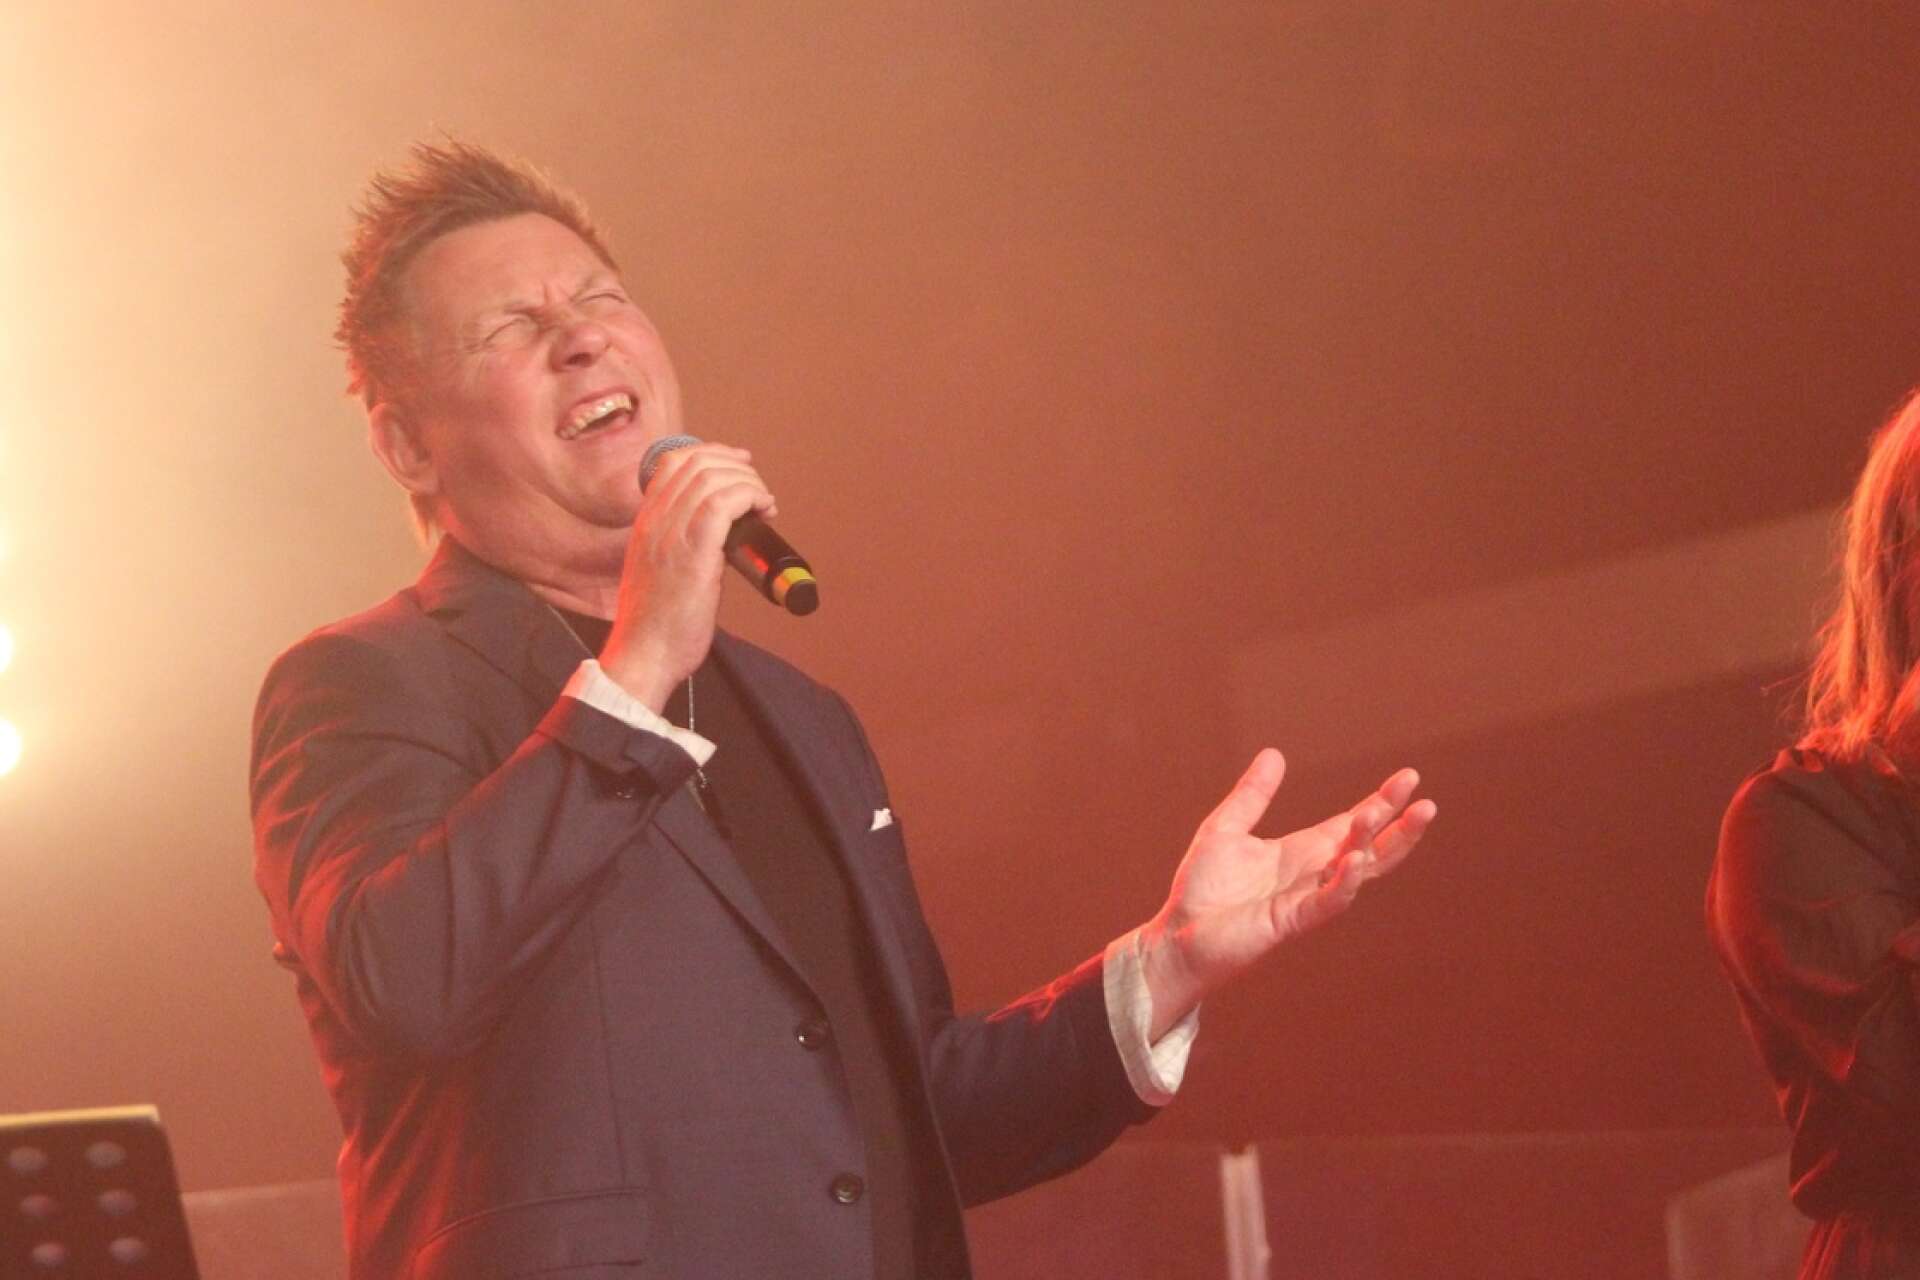 Henrik Sethsson från Mariestad har skrivit Årets låt. Han och bandet Casanovas prisades med en Guldklave på årets dansbandsgala i Malung.